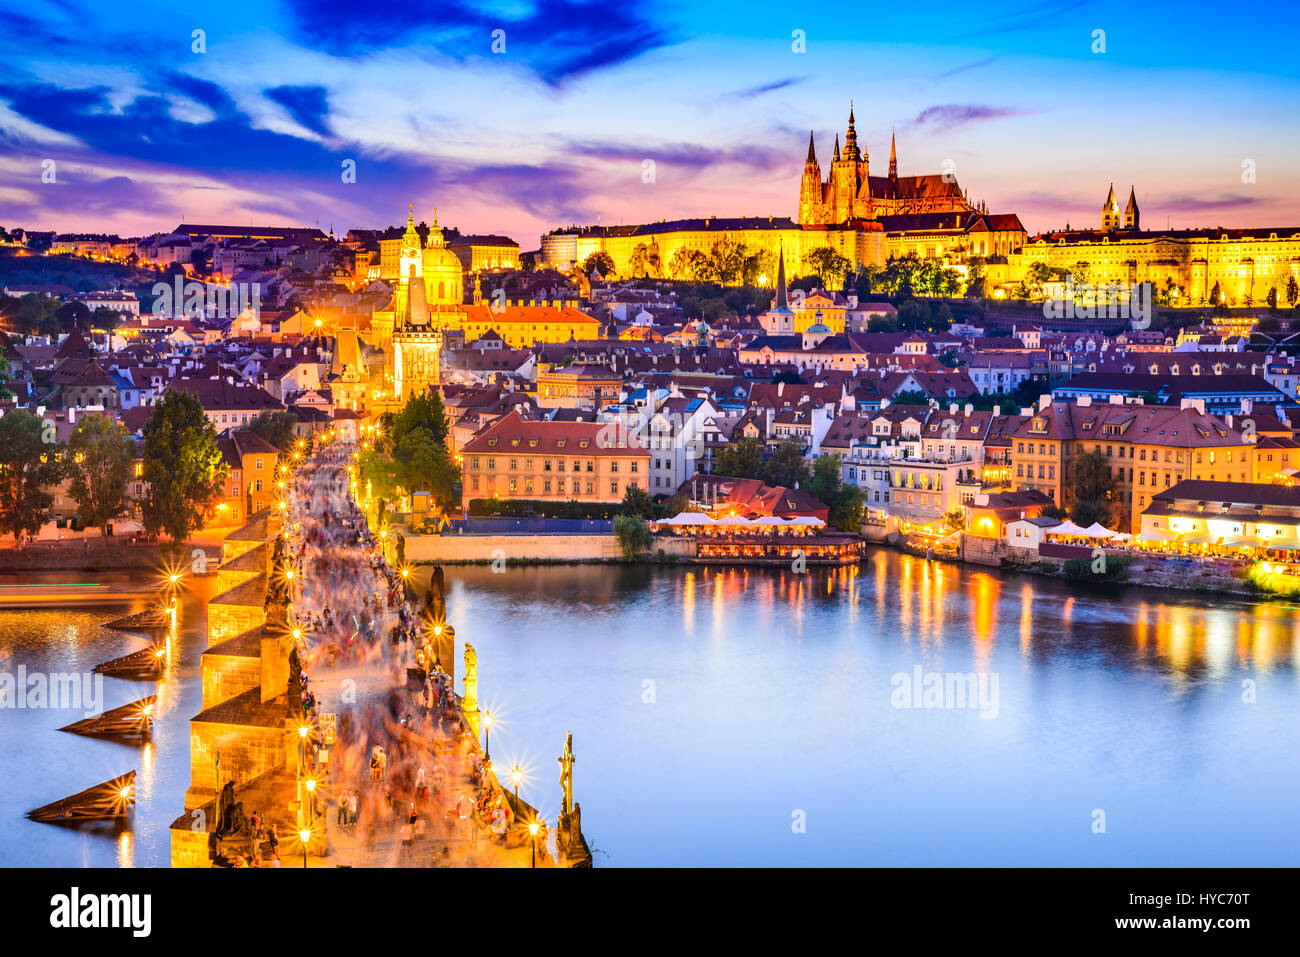 Prague, République tchèque. Le Pont Charles et le château de Prague (Hradcany) avec la cathédrale Saint-Guy et l'église Saint Georges le crépuscule du soir, la bohême landmark en P Banque D'Images